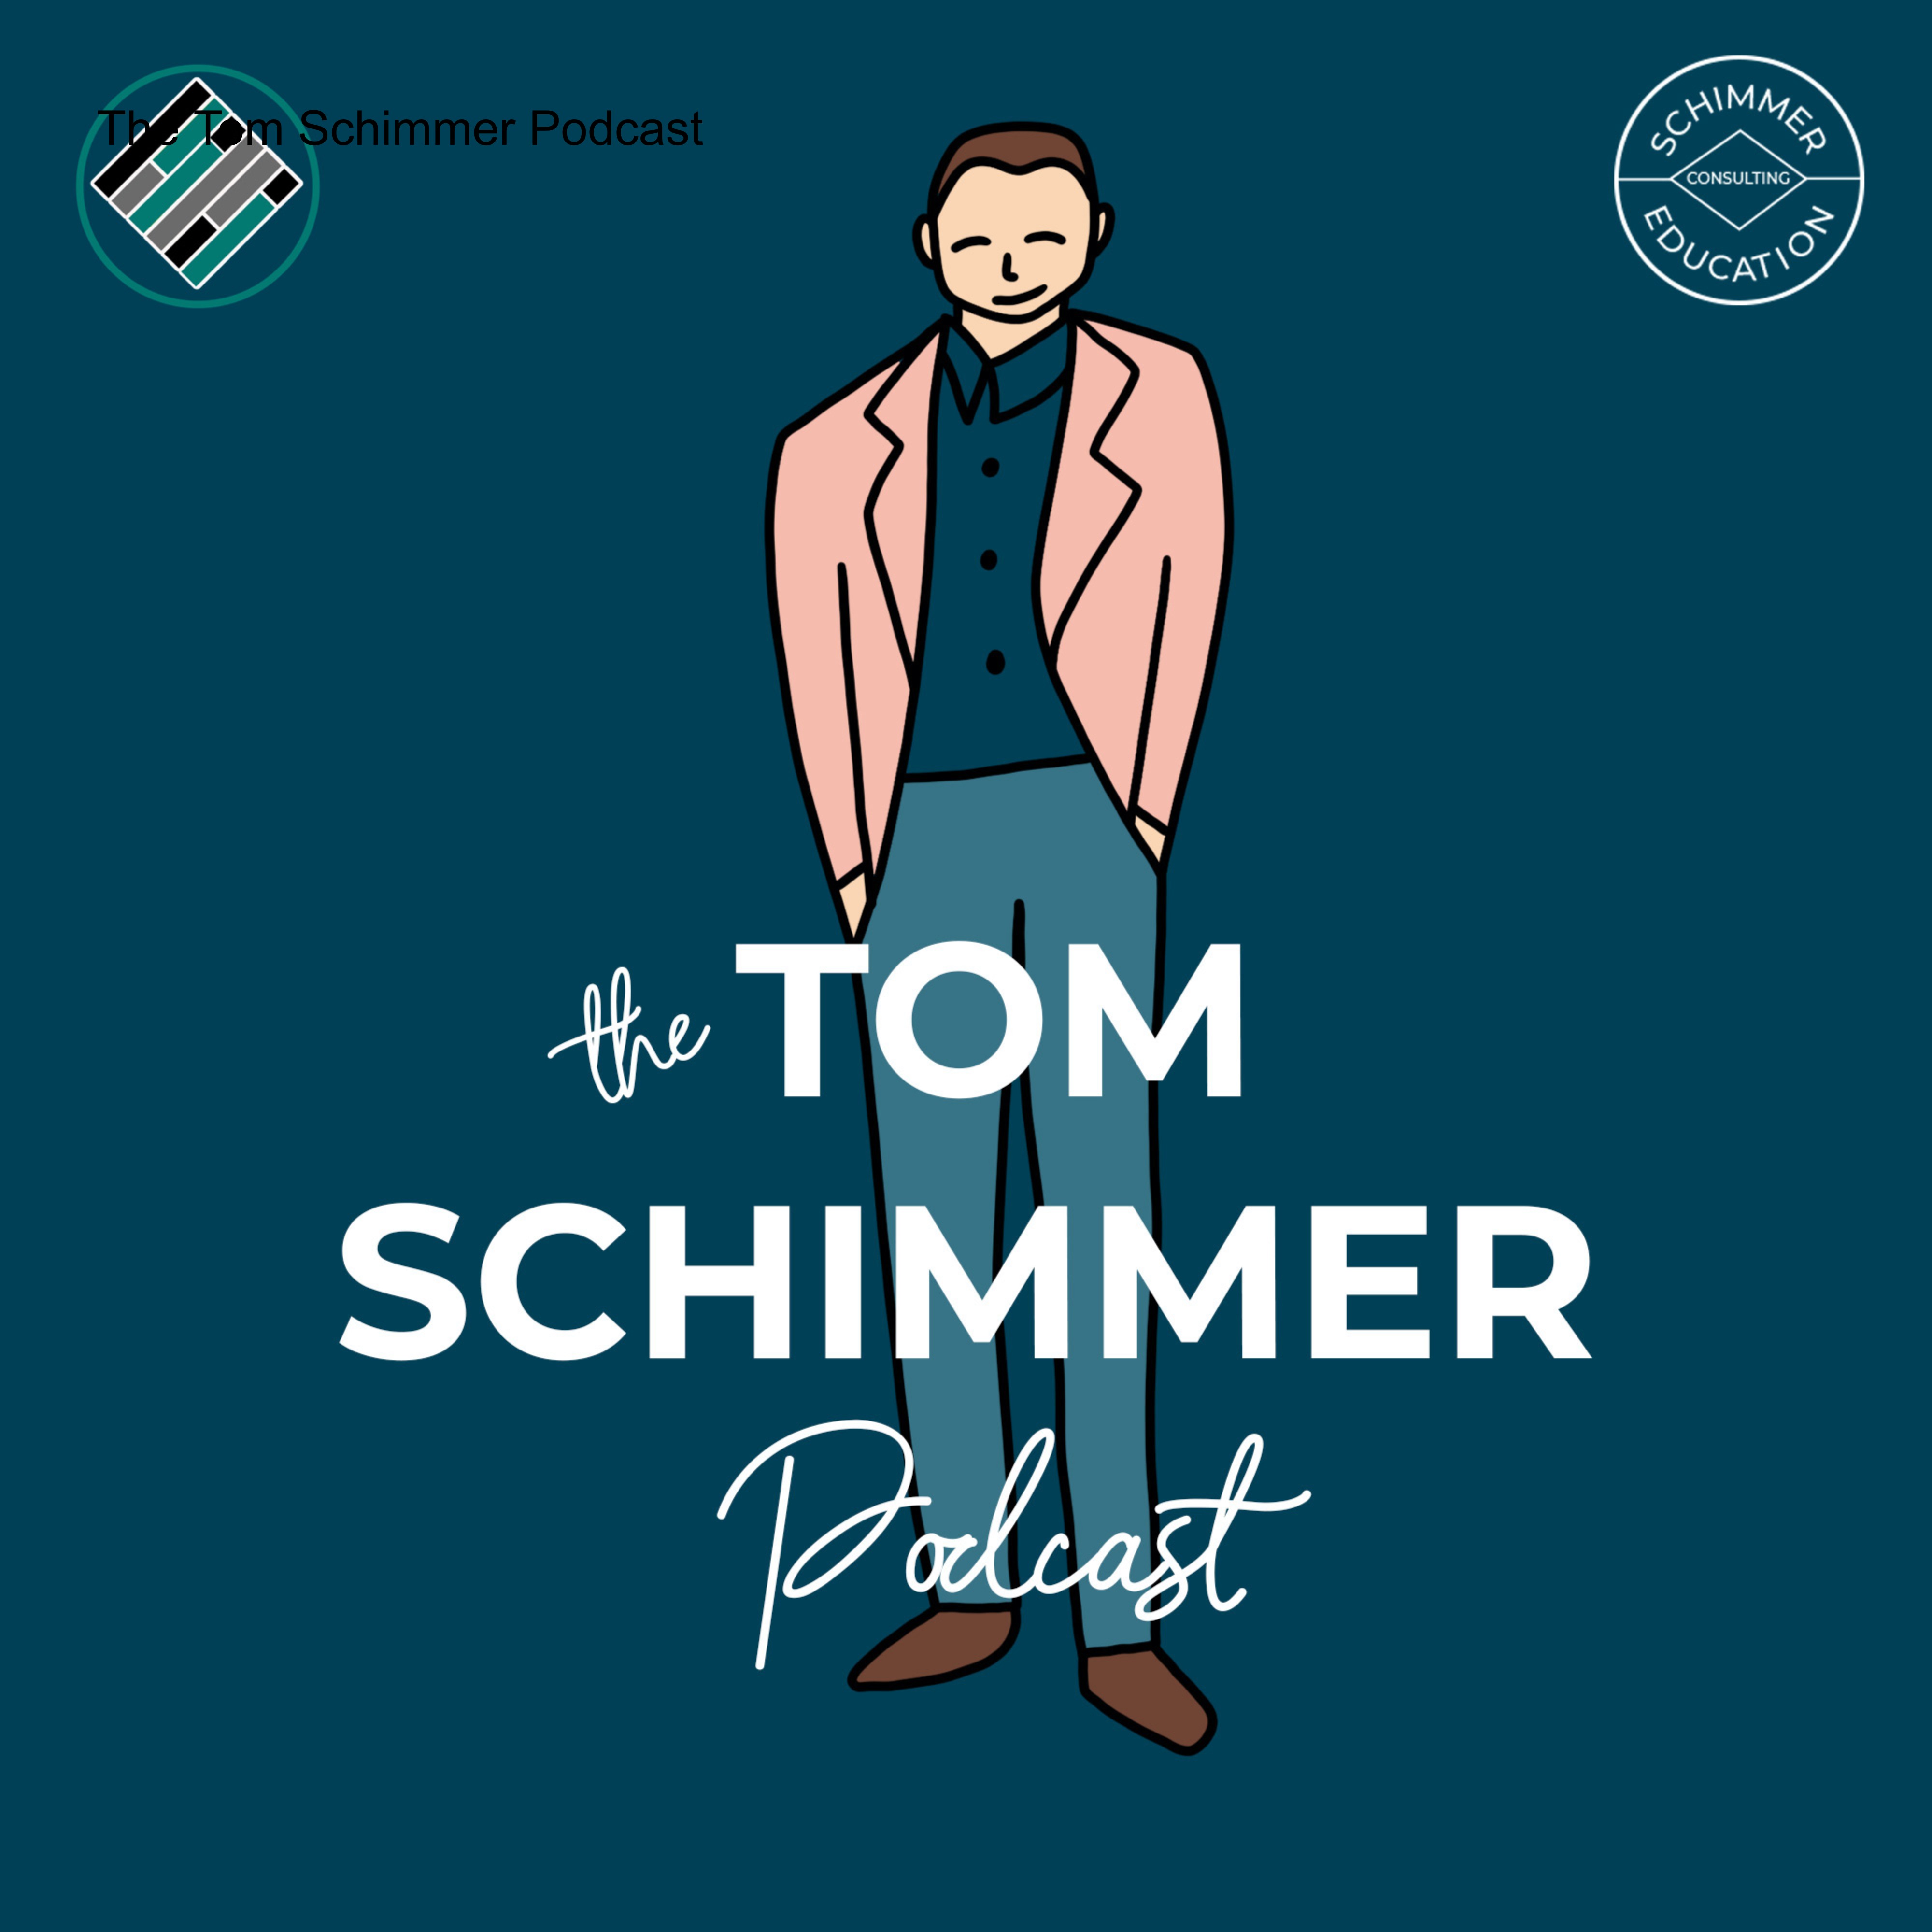 The Tom Schimmer Podcast